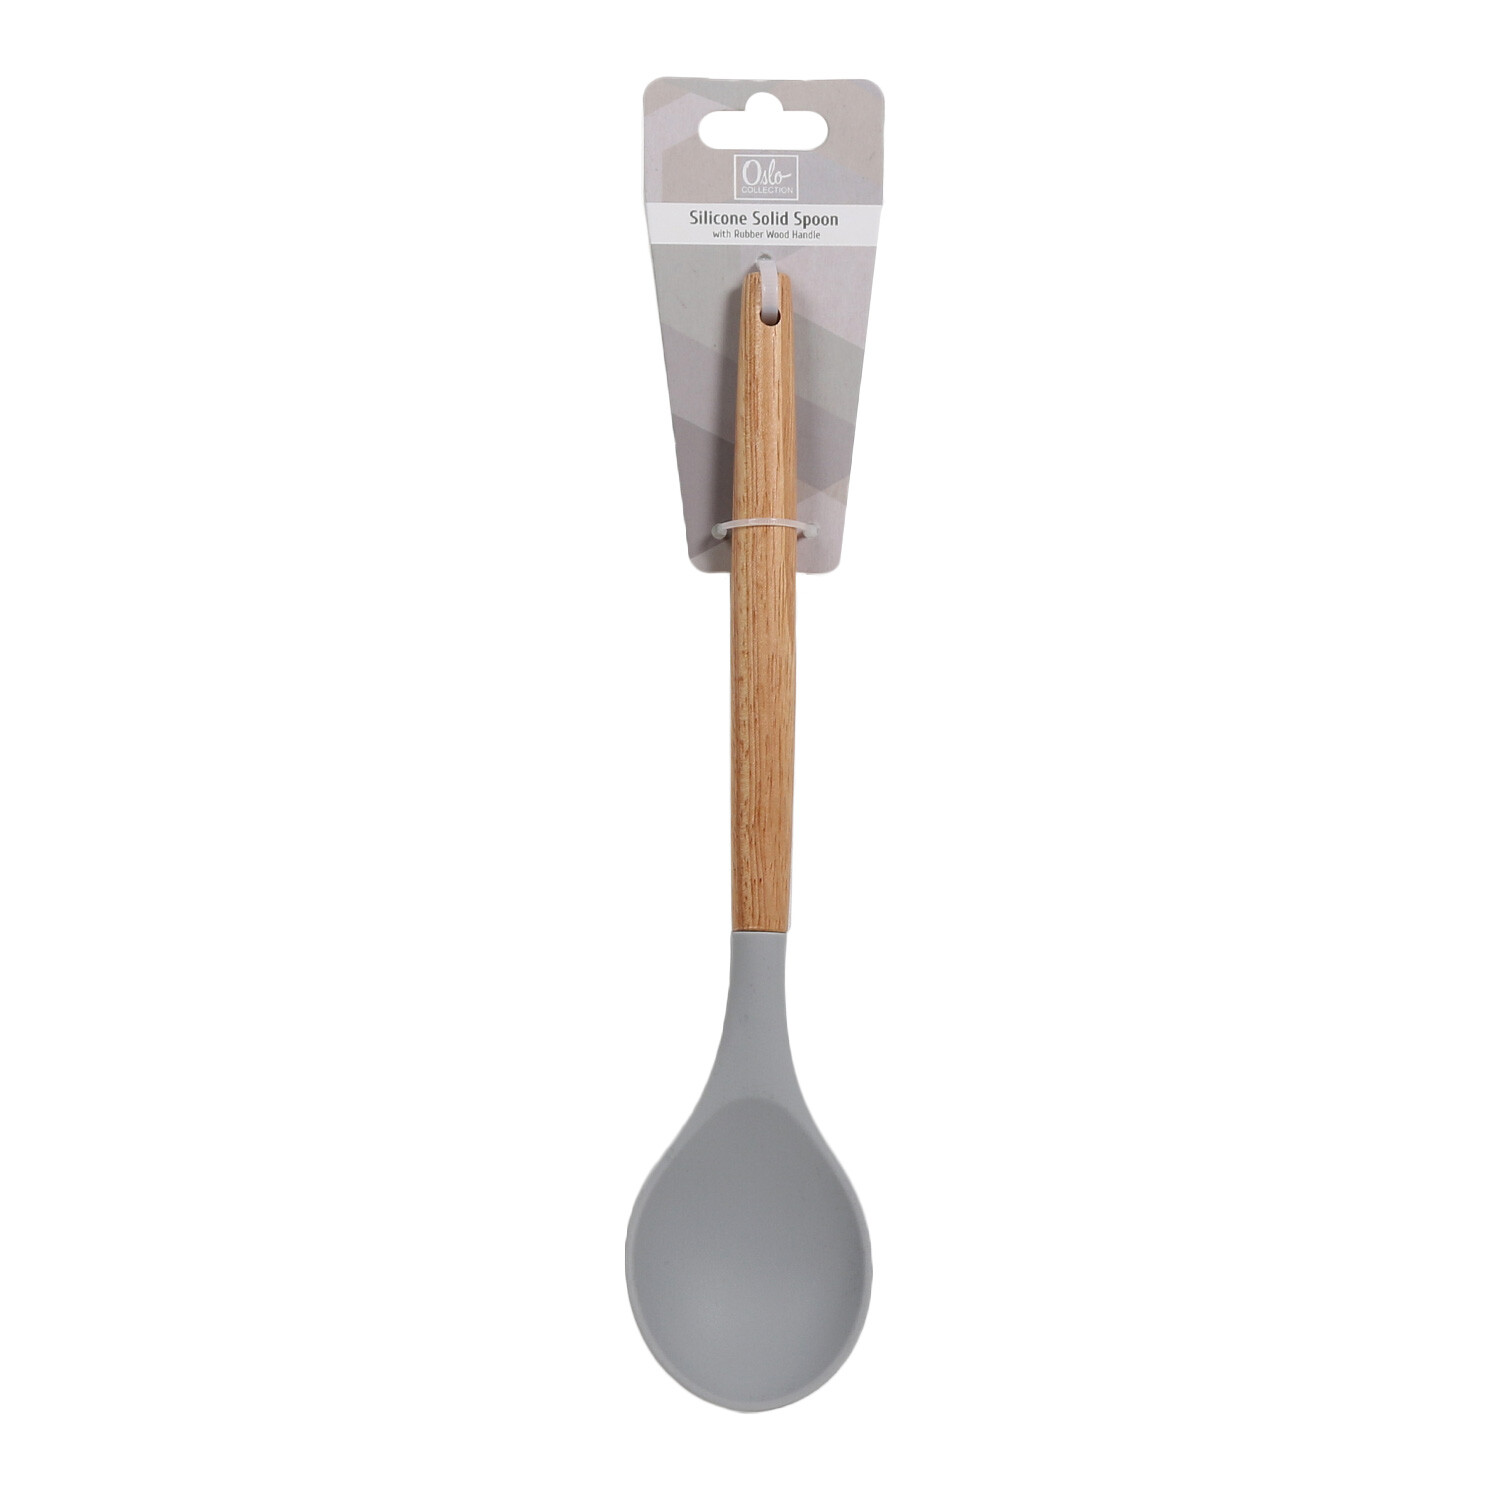 Oslo Silicone Solid Spoon - Grey Image